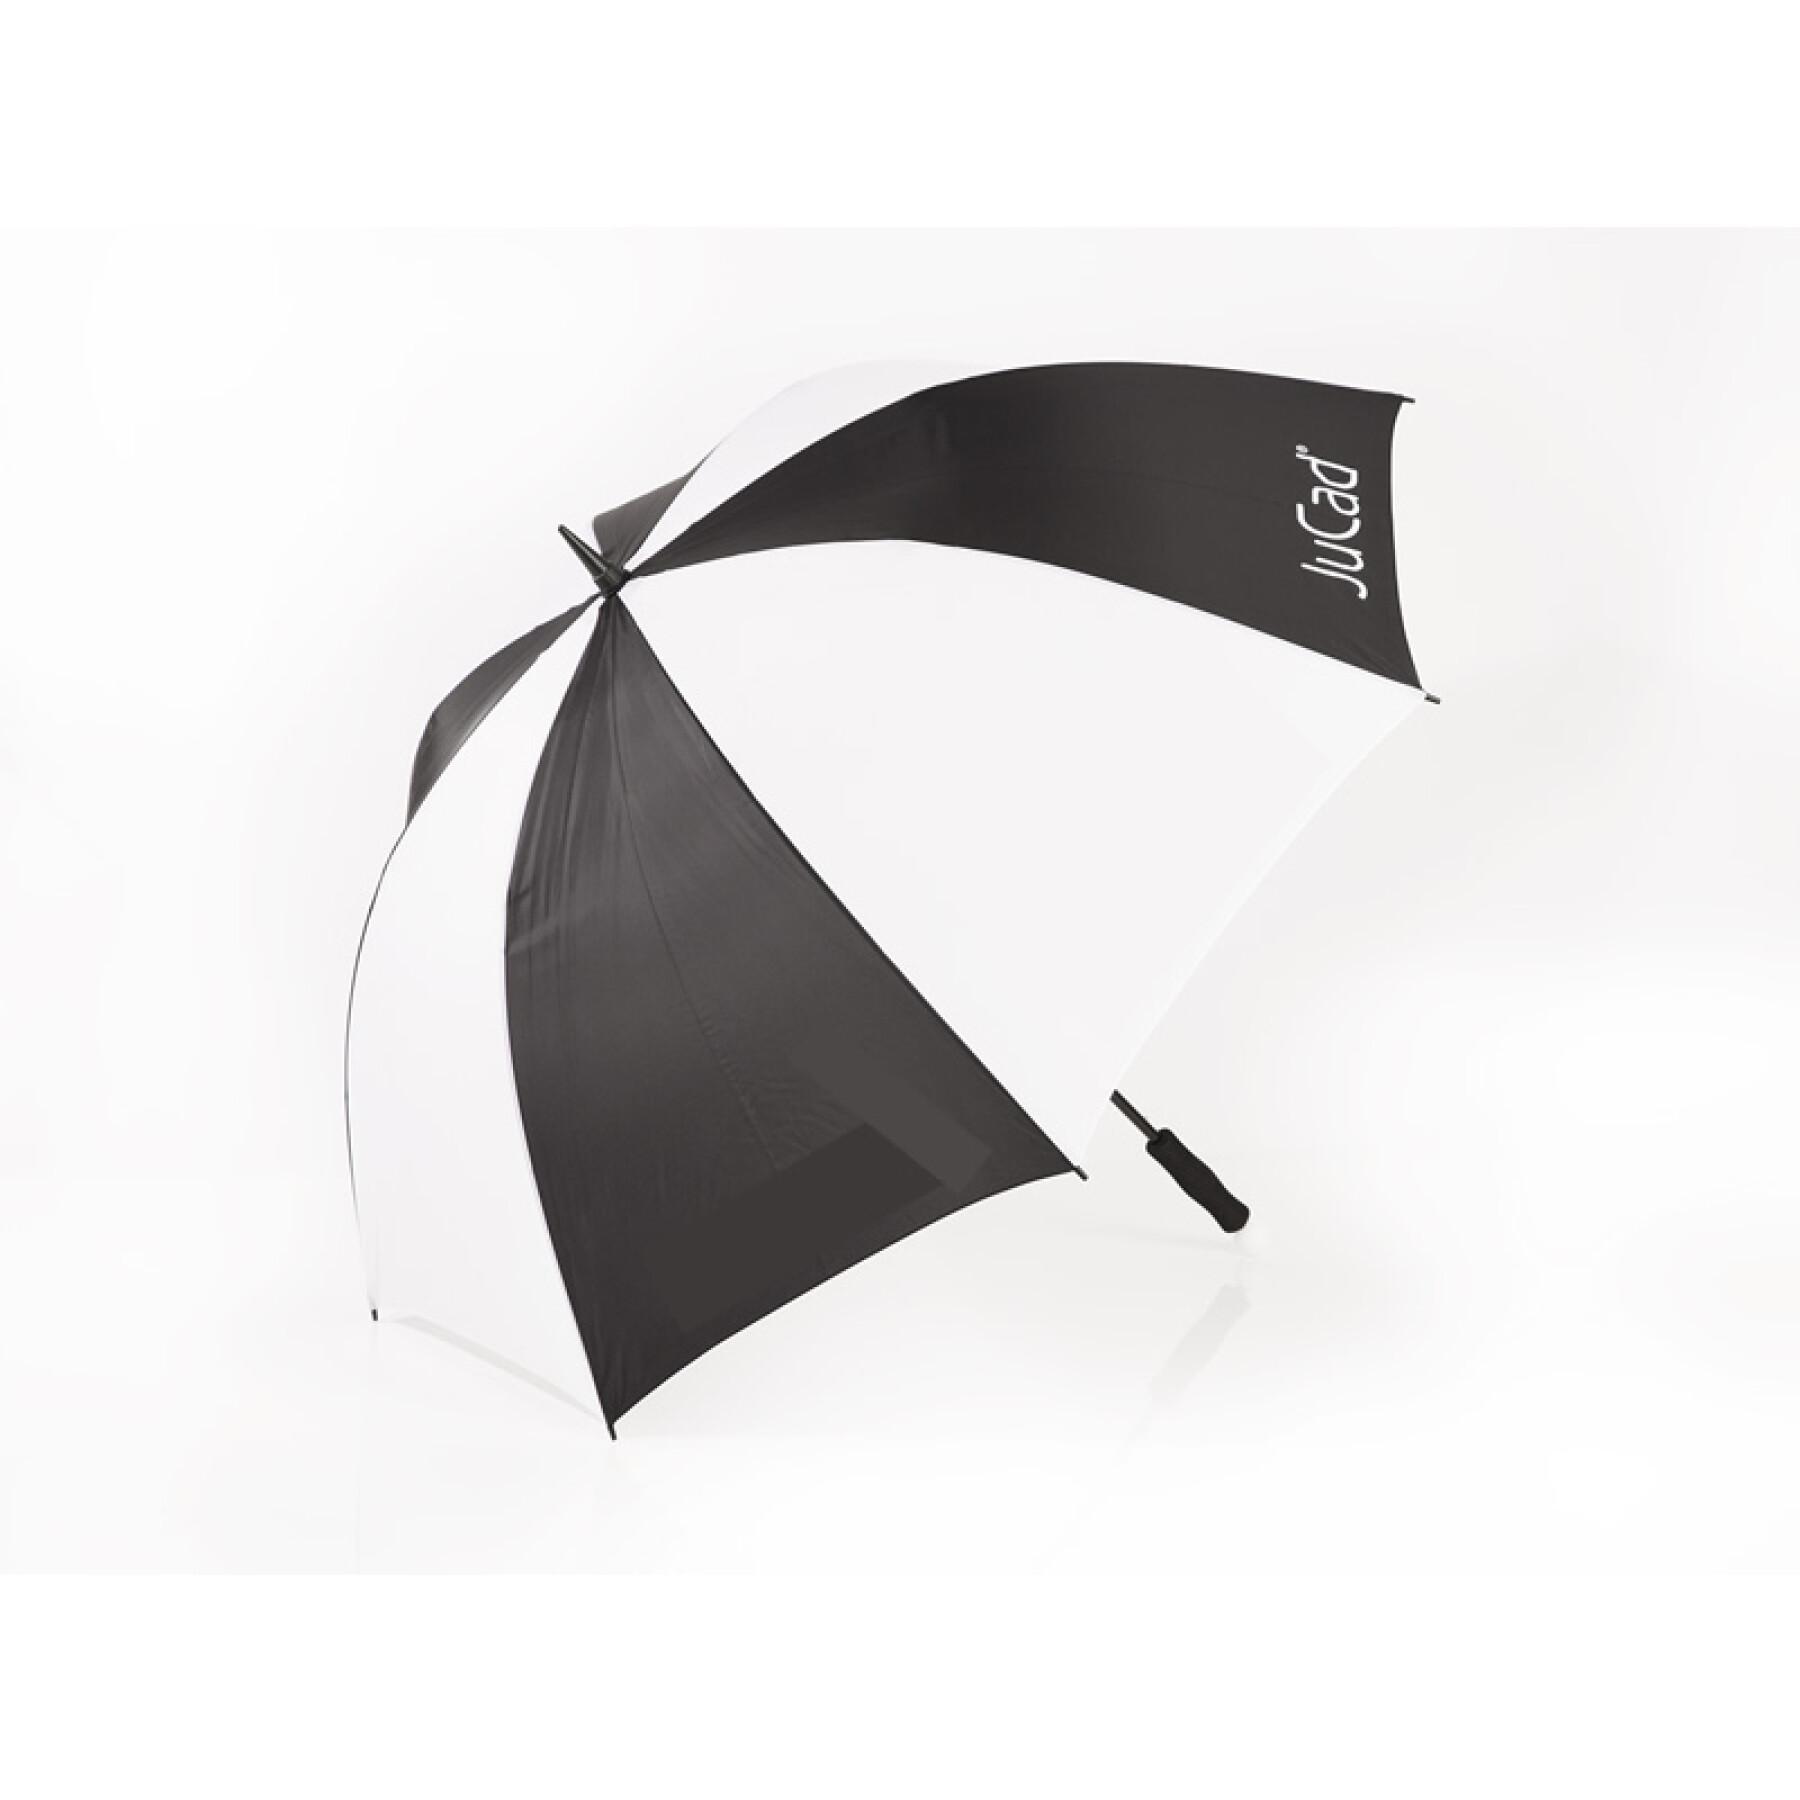 Bardzo duży i ultralekki parasol bez pręta mocującego JuCad